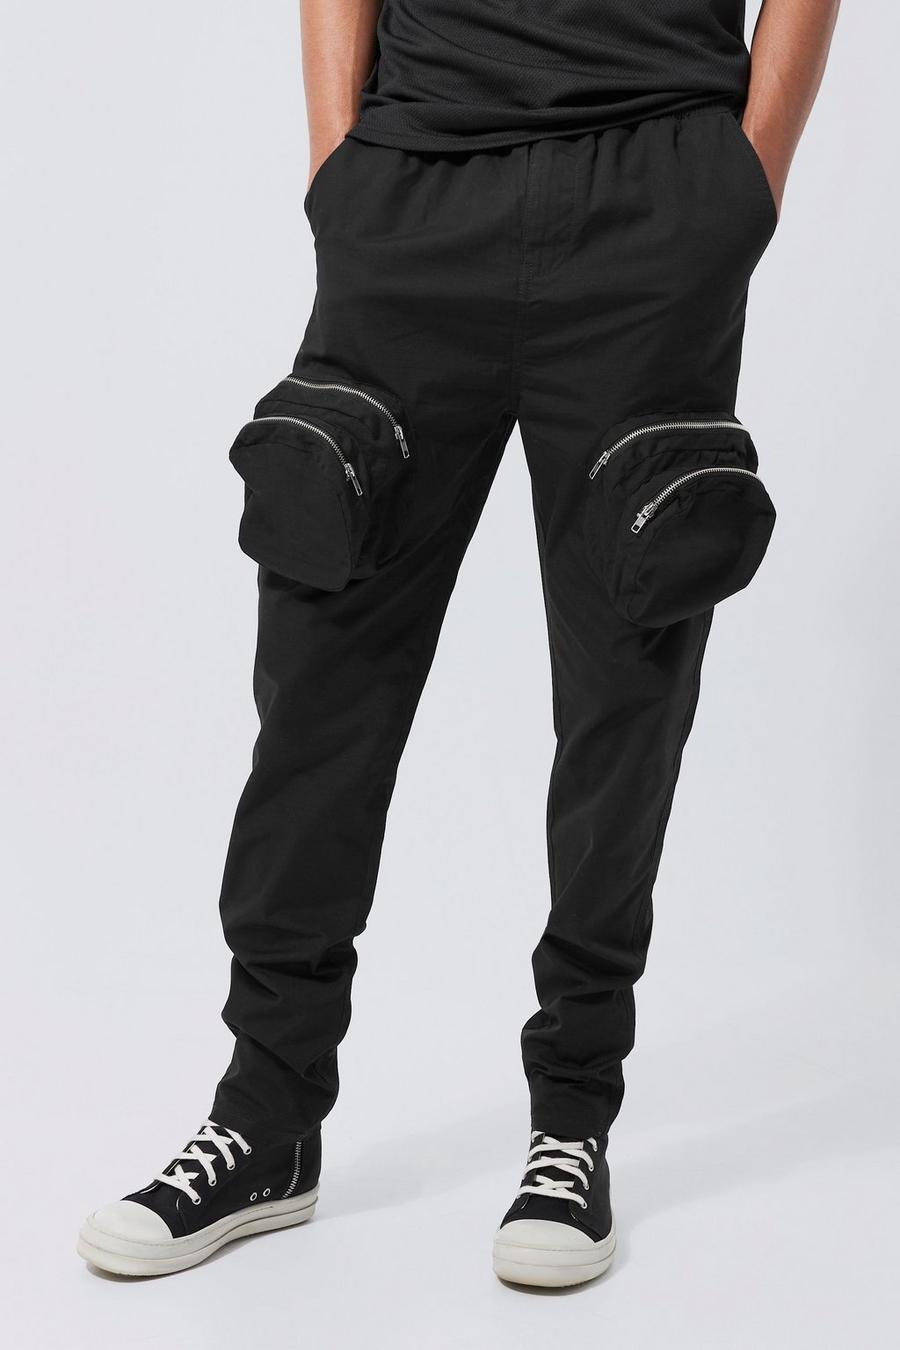 Pantalón Tall cargo ajustado elegante con cremallera 3D, Black